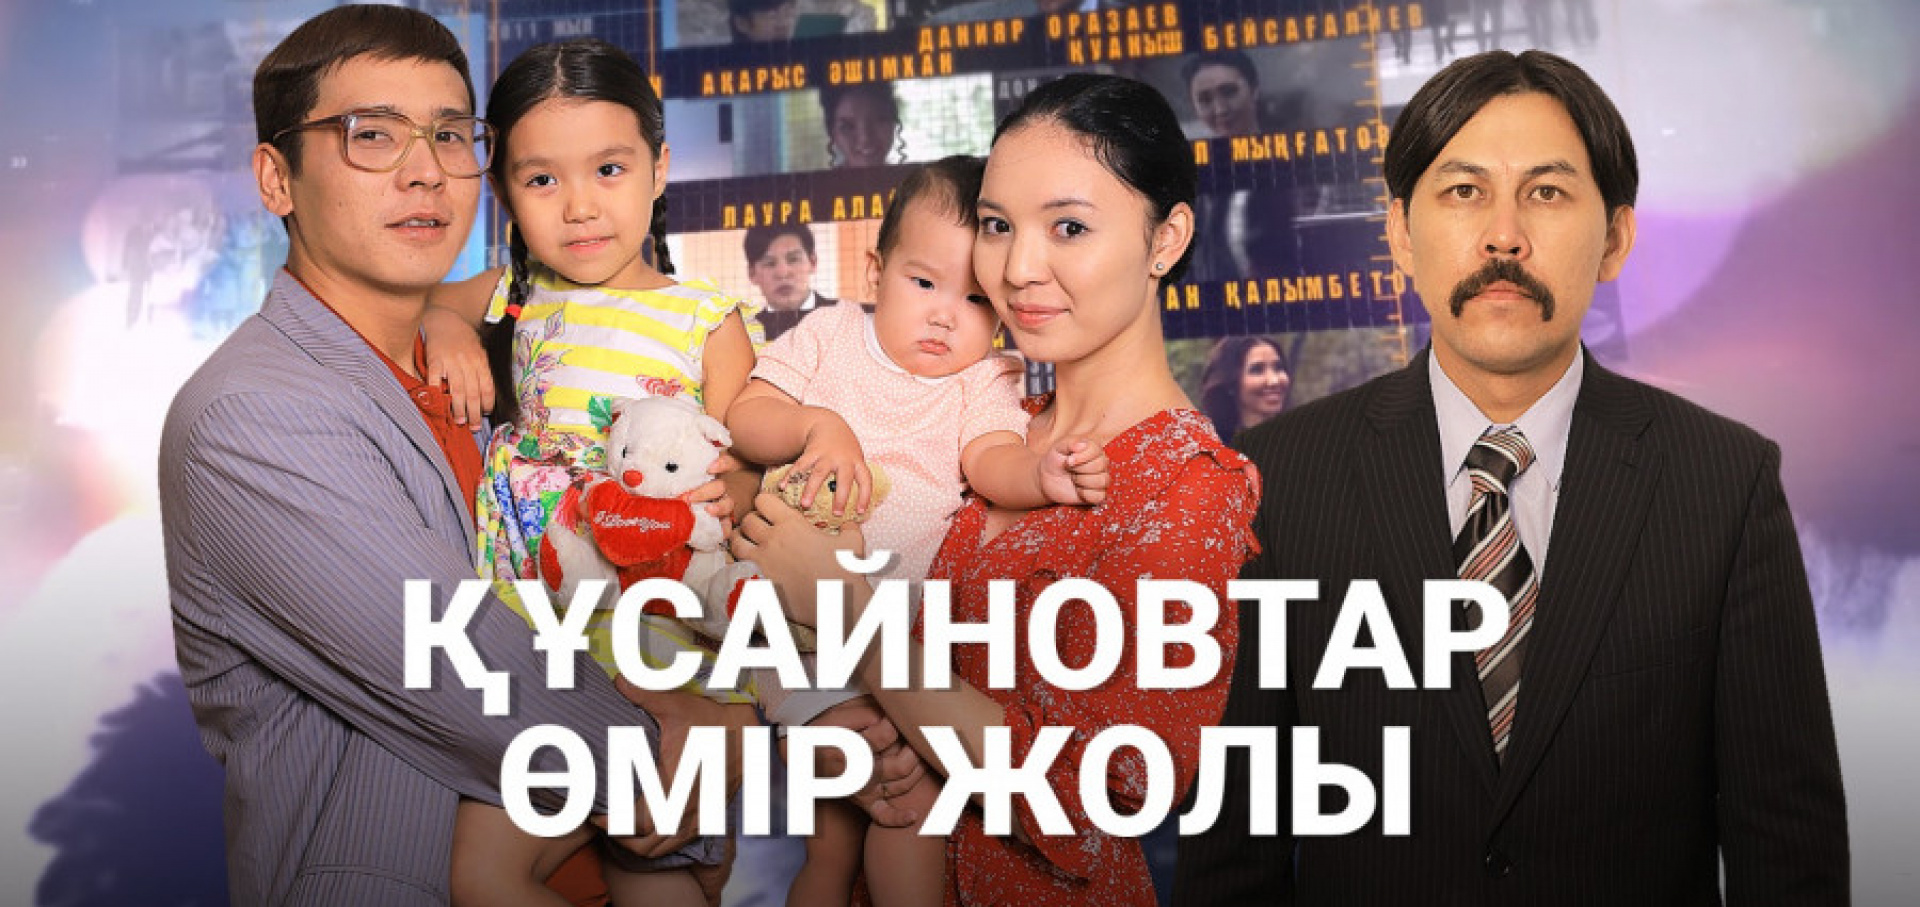 Kussainovs family